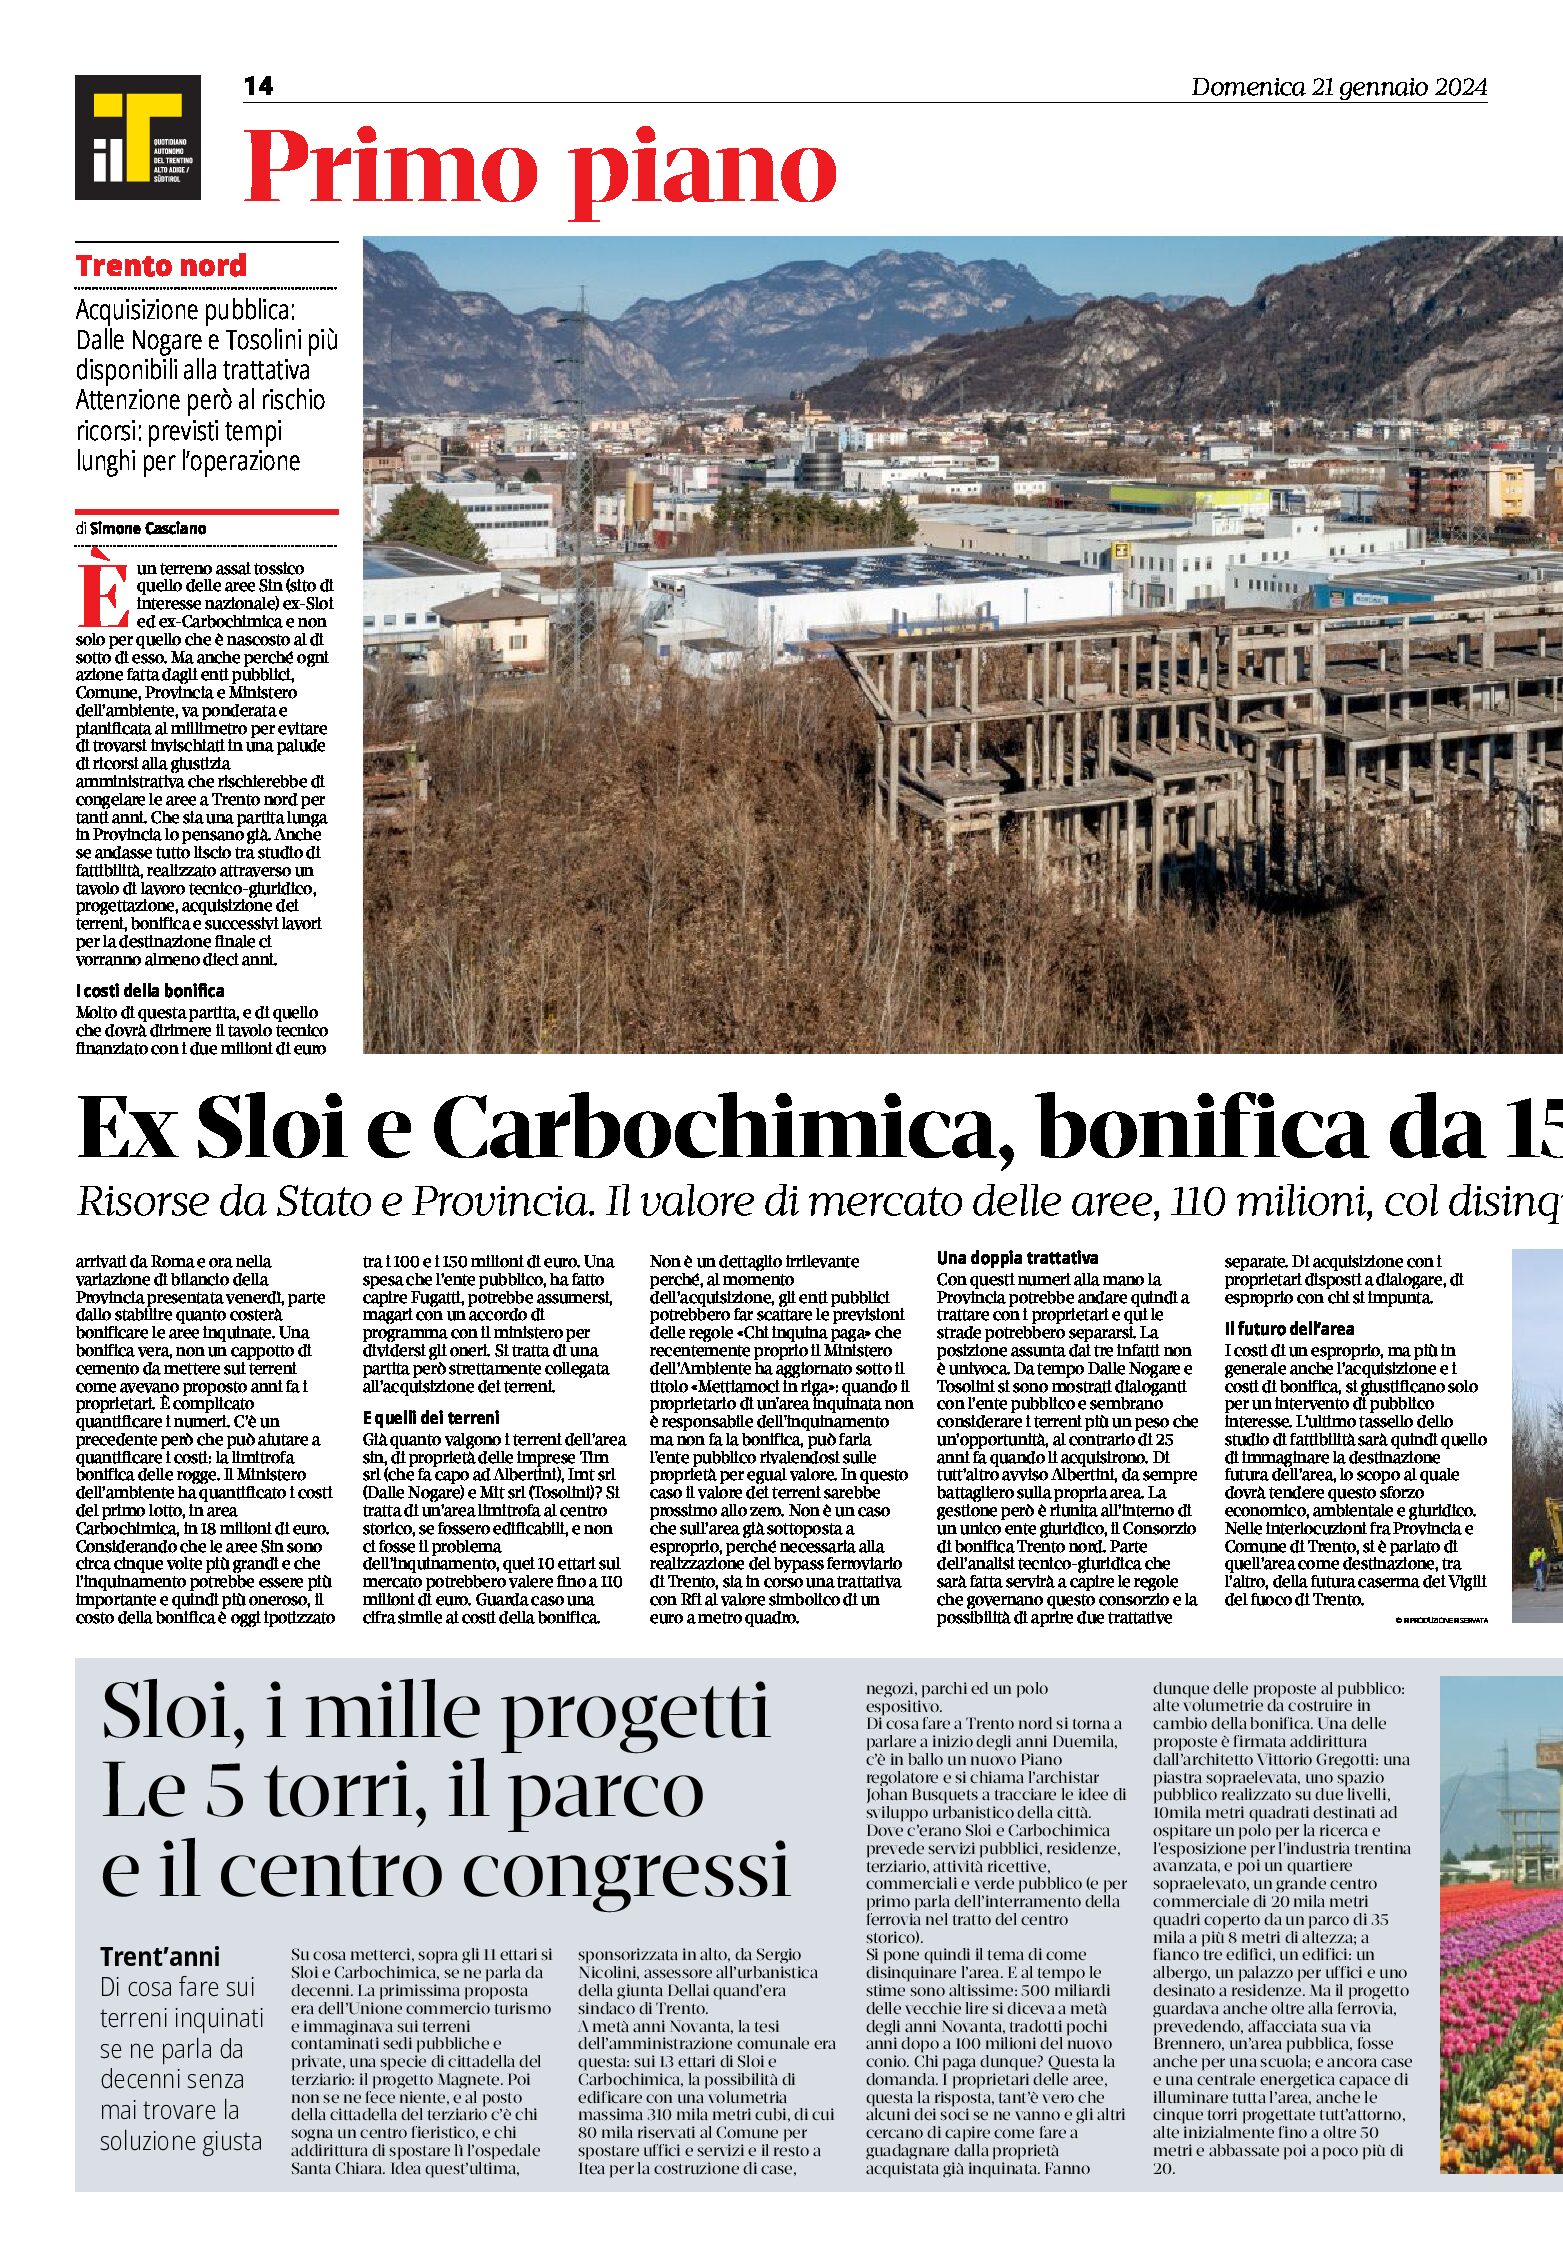 Trento Nord: ex Sloi e Carbochimica, bonifica da 150 milioni